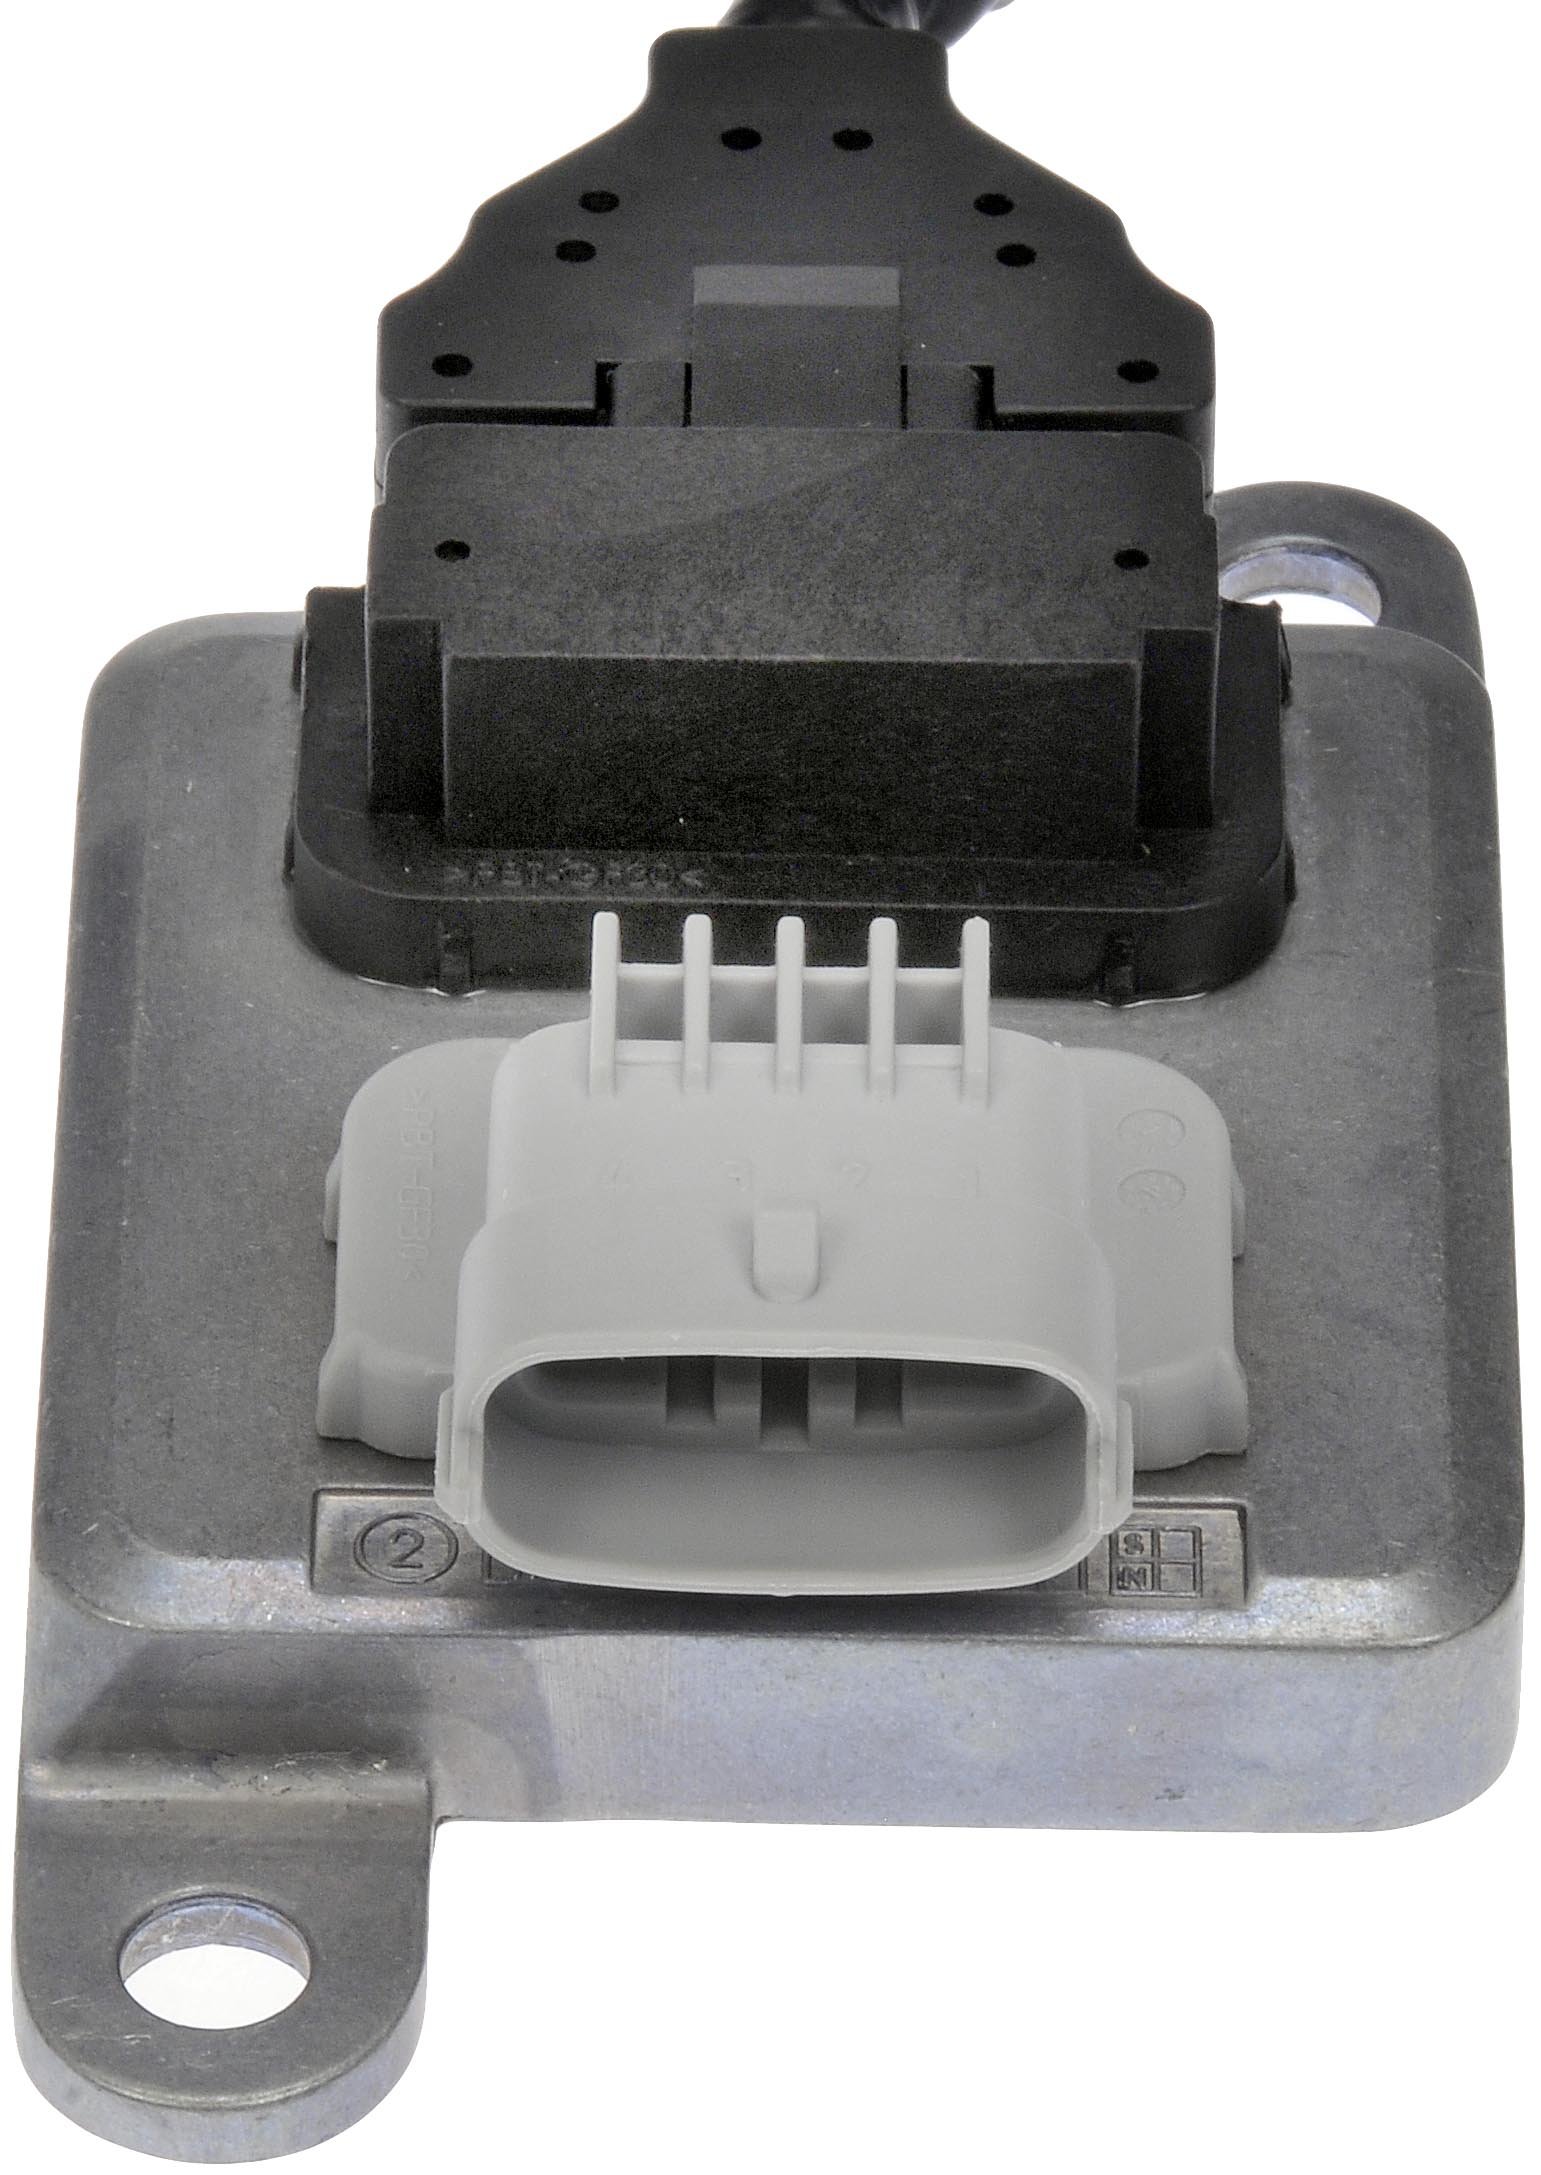 Dorman 904-6029 Nitrogen Oxide Sensor Outlet of Diesel Particulate Filter for Select Ram Models